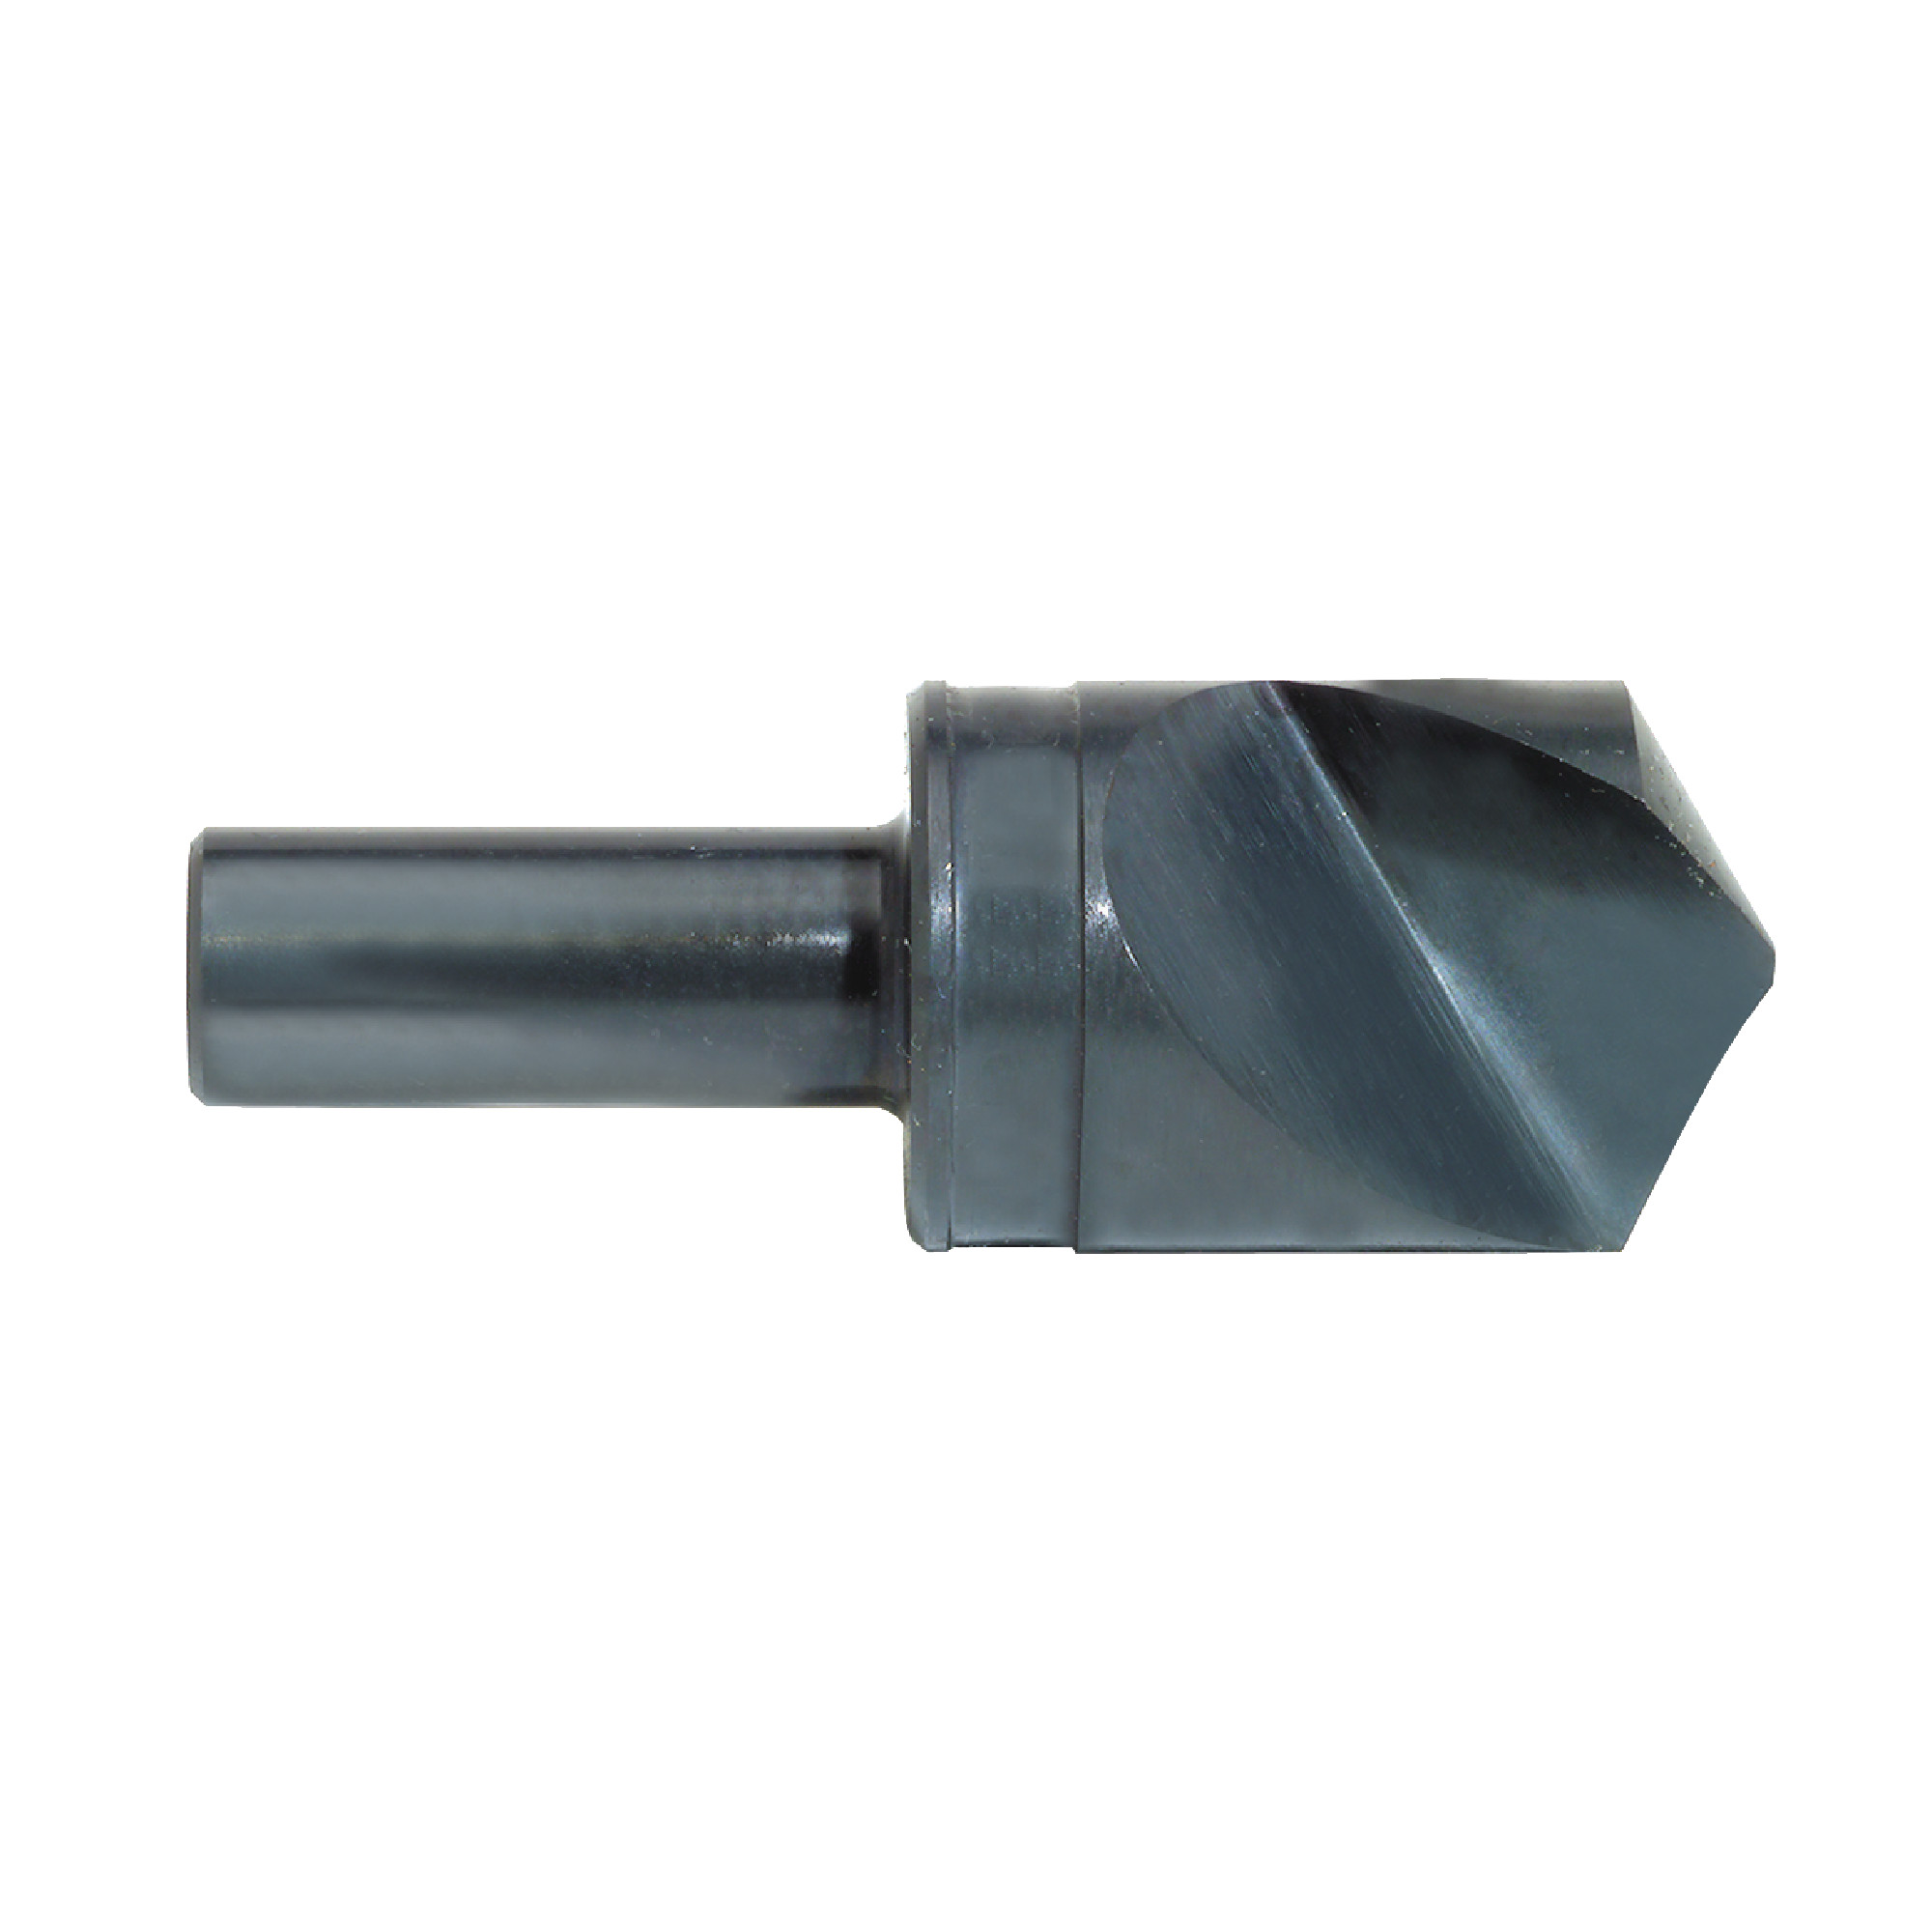 Single Flute (Uniflute) High Speed Steel Countersinks